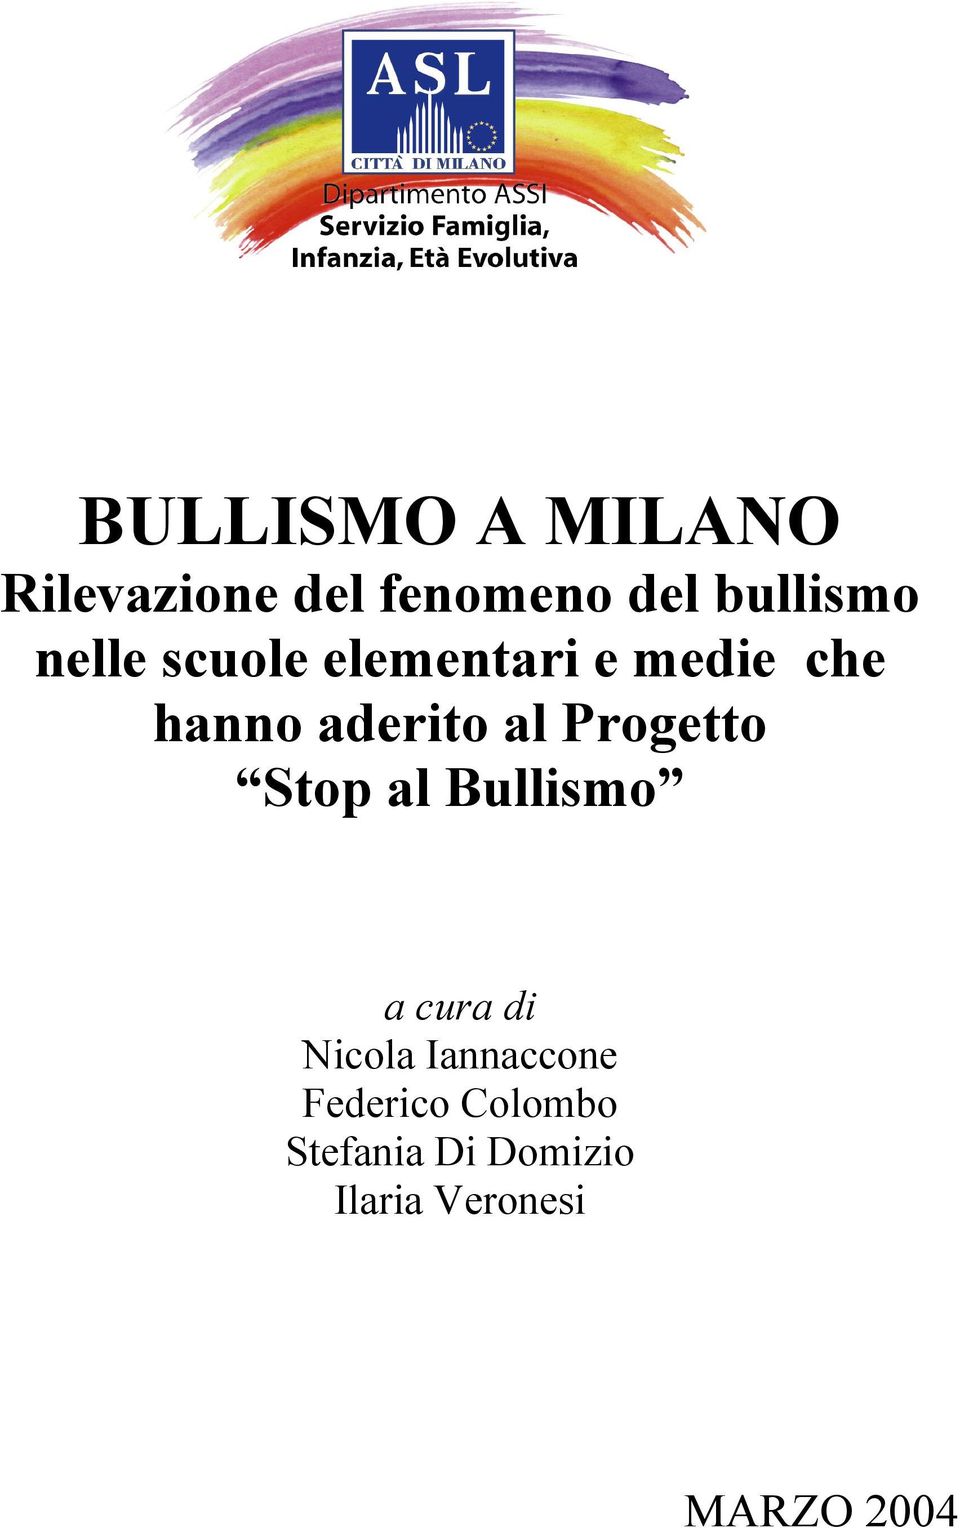 Progetto Stop al Bullismo a cura di Nicola Iannaccone